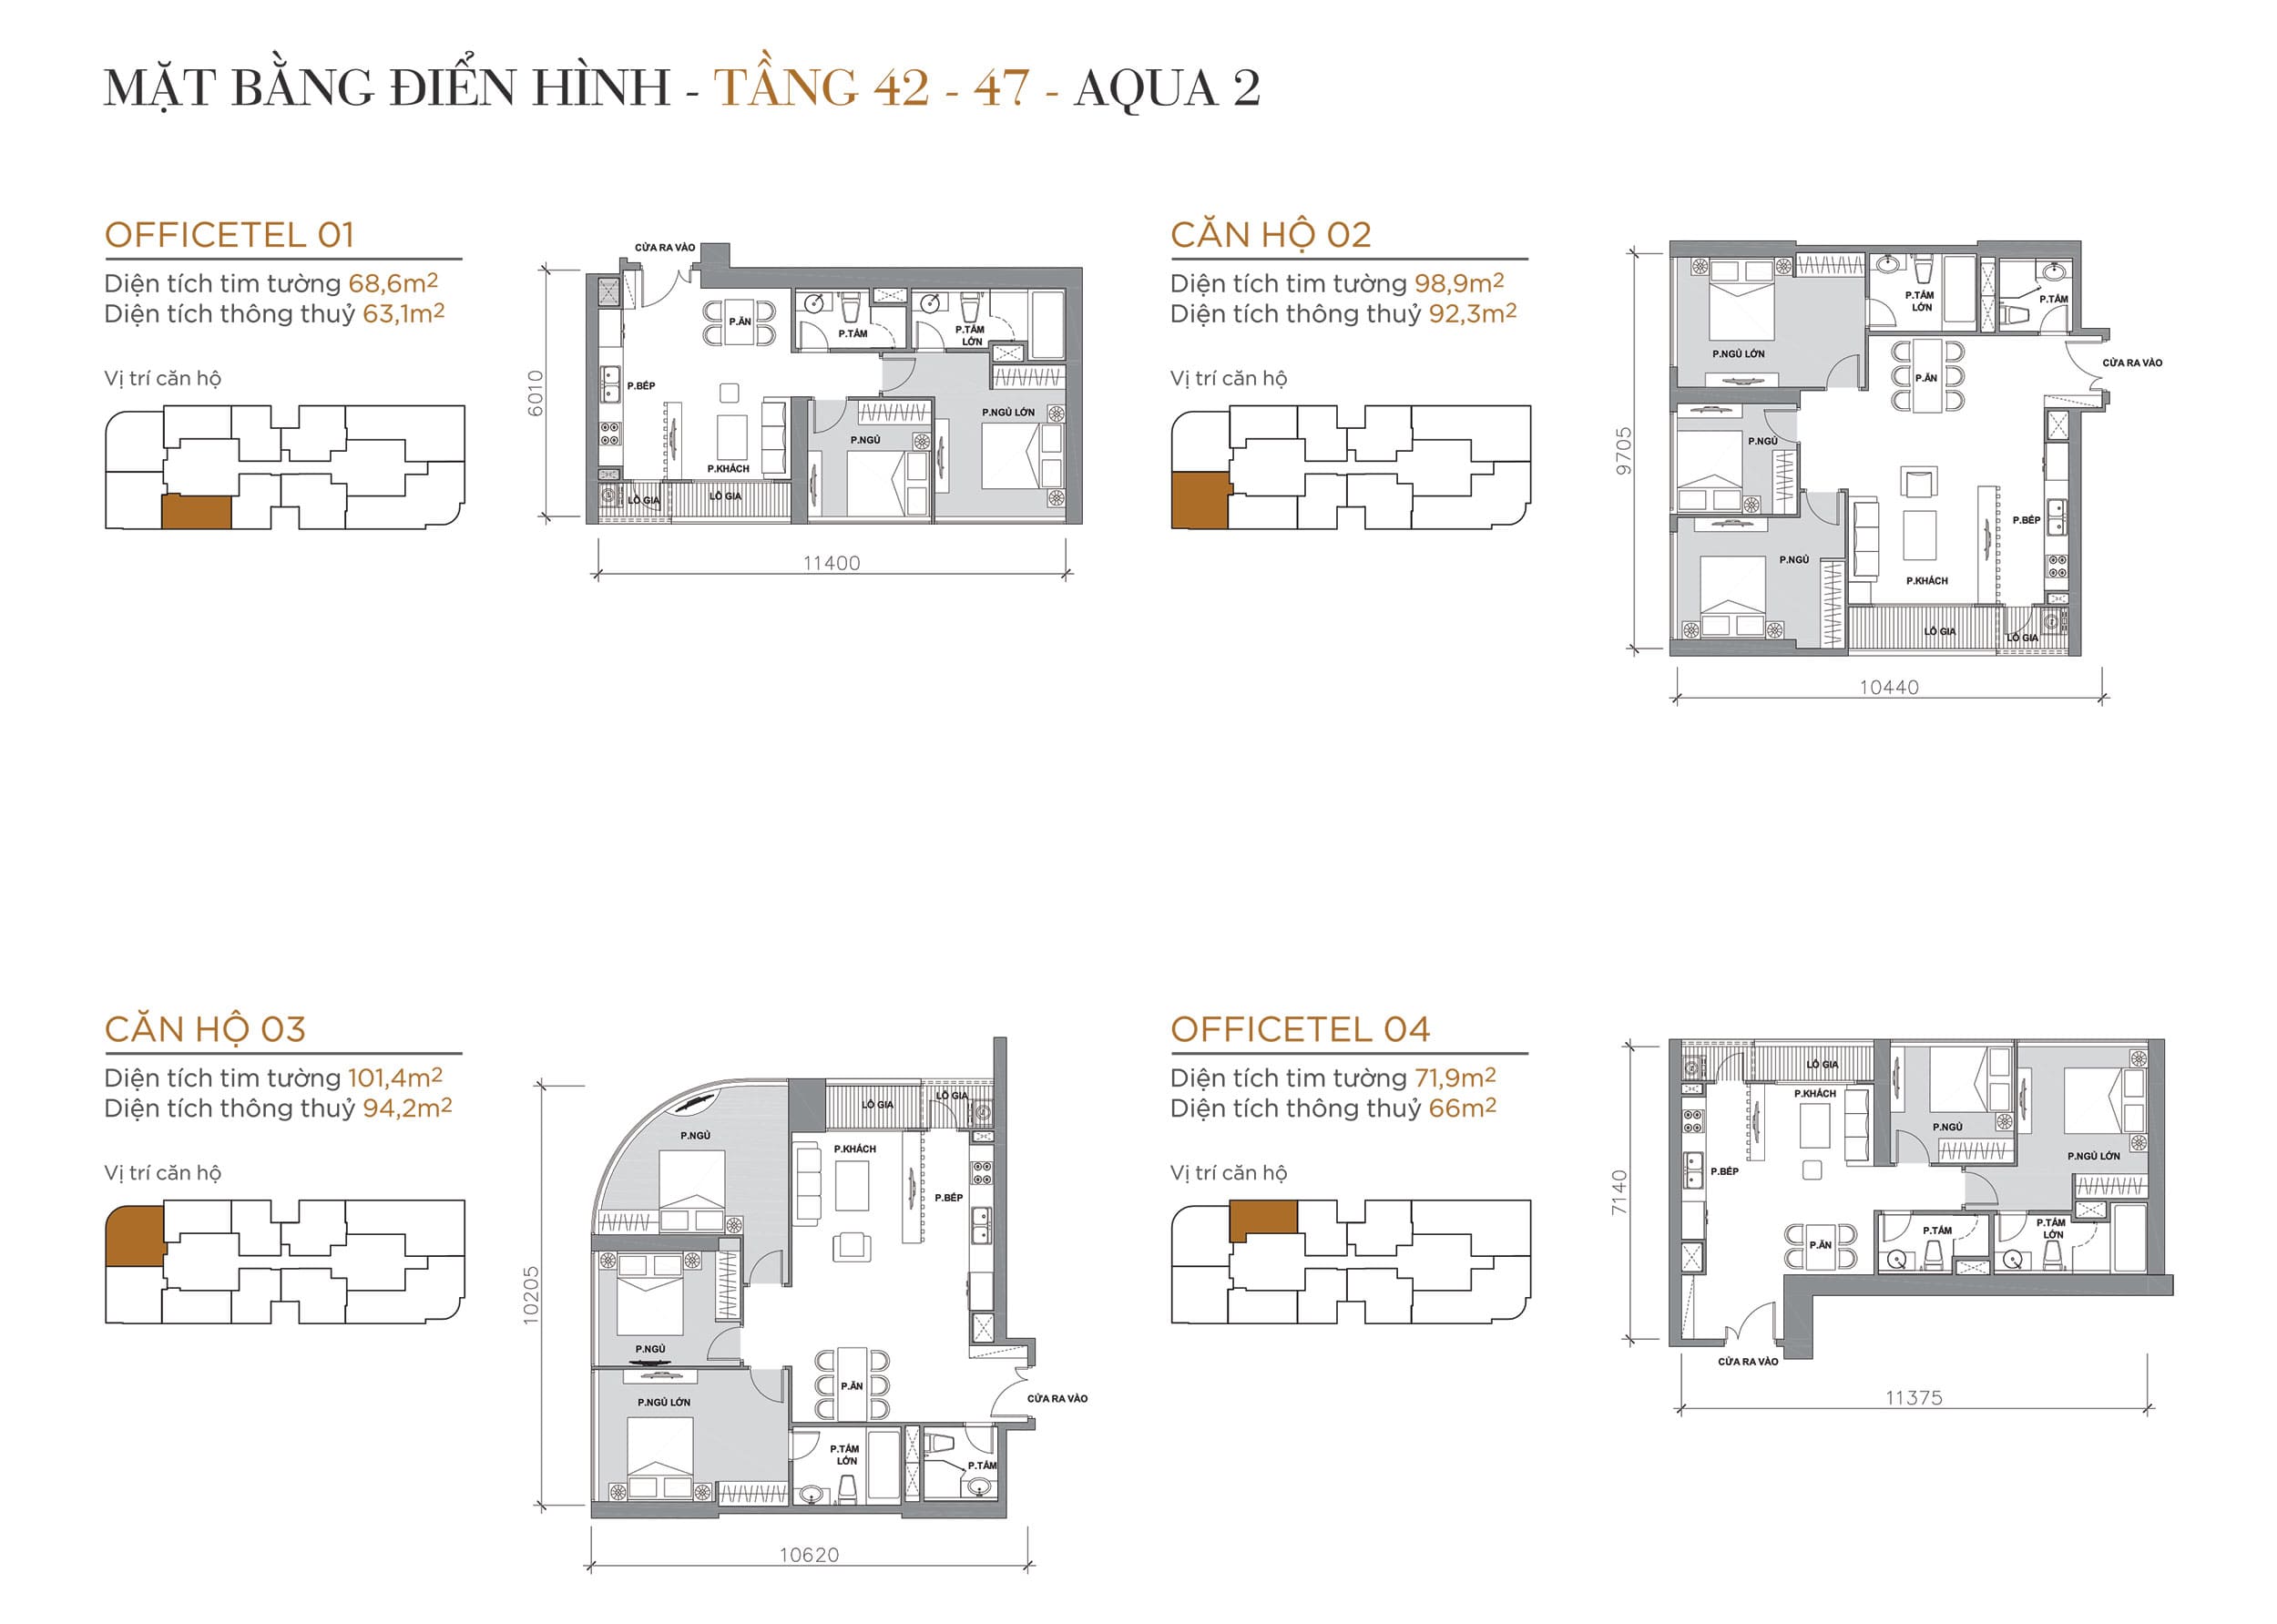 Layout thiết kế điển hình Tầng 42 đến Tầng 47 Tòa Aqua 2 loại Officetel 01, Căn hộ 02, Căn hộ 03, Officetel 04.